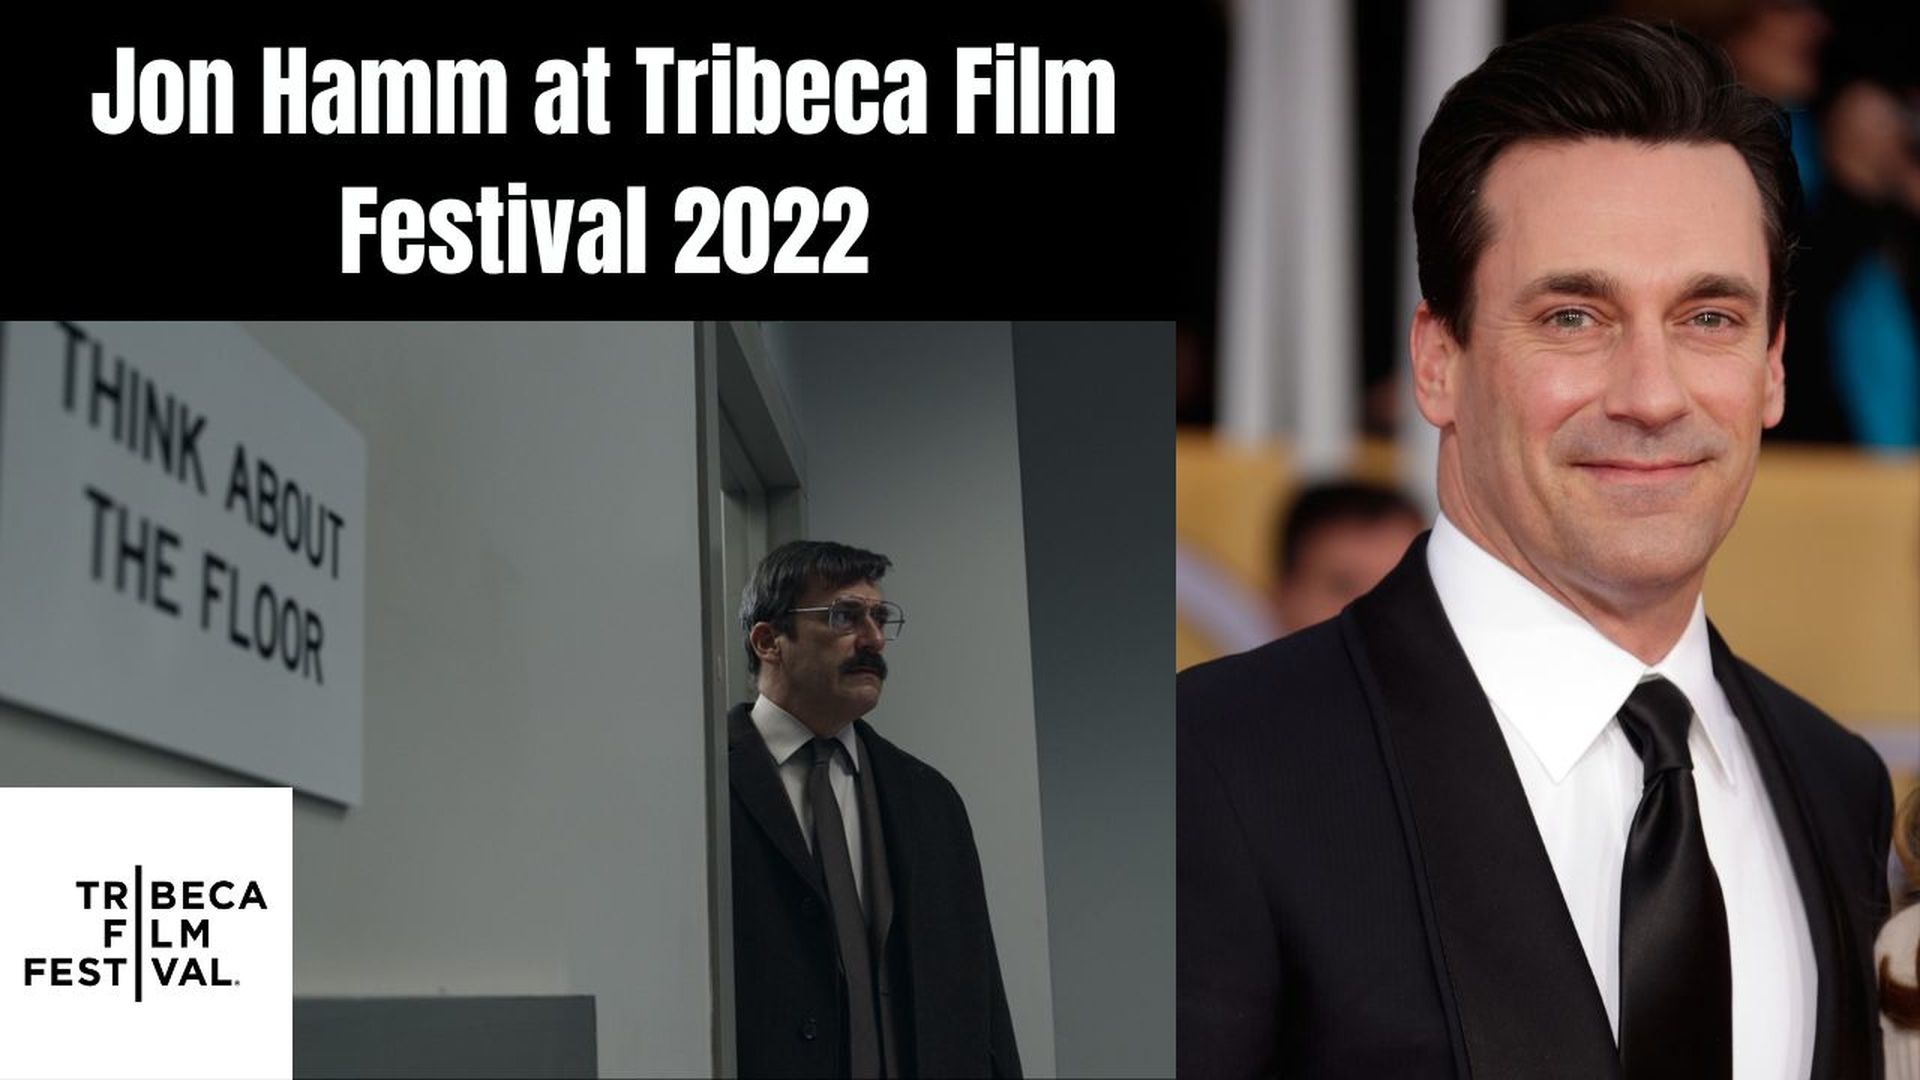 Jon Hamm at Tribeca Film Festival